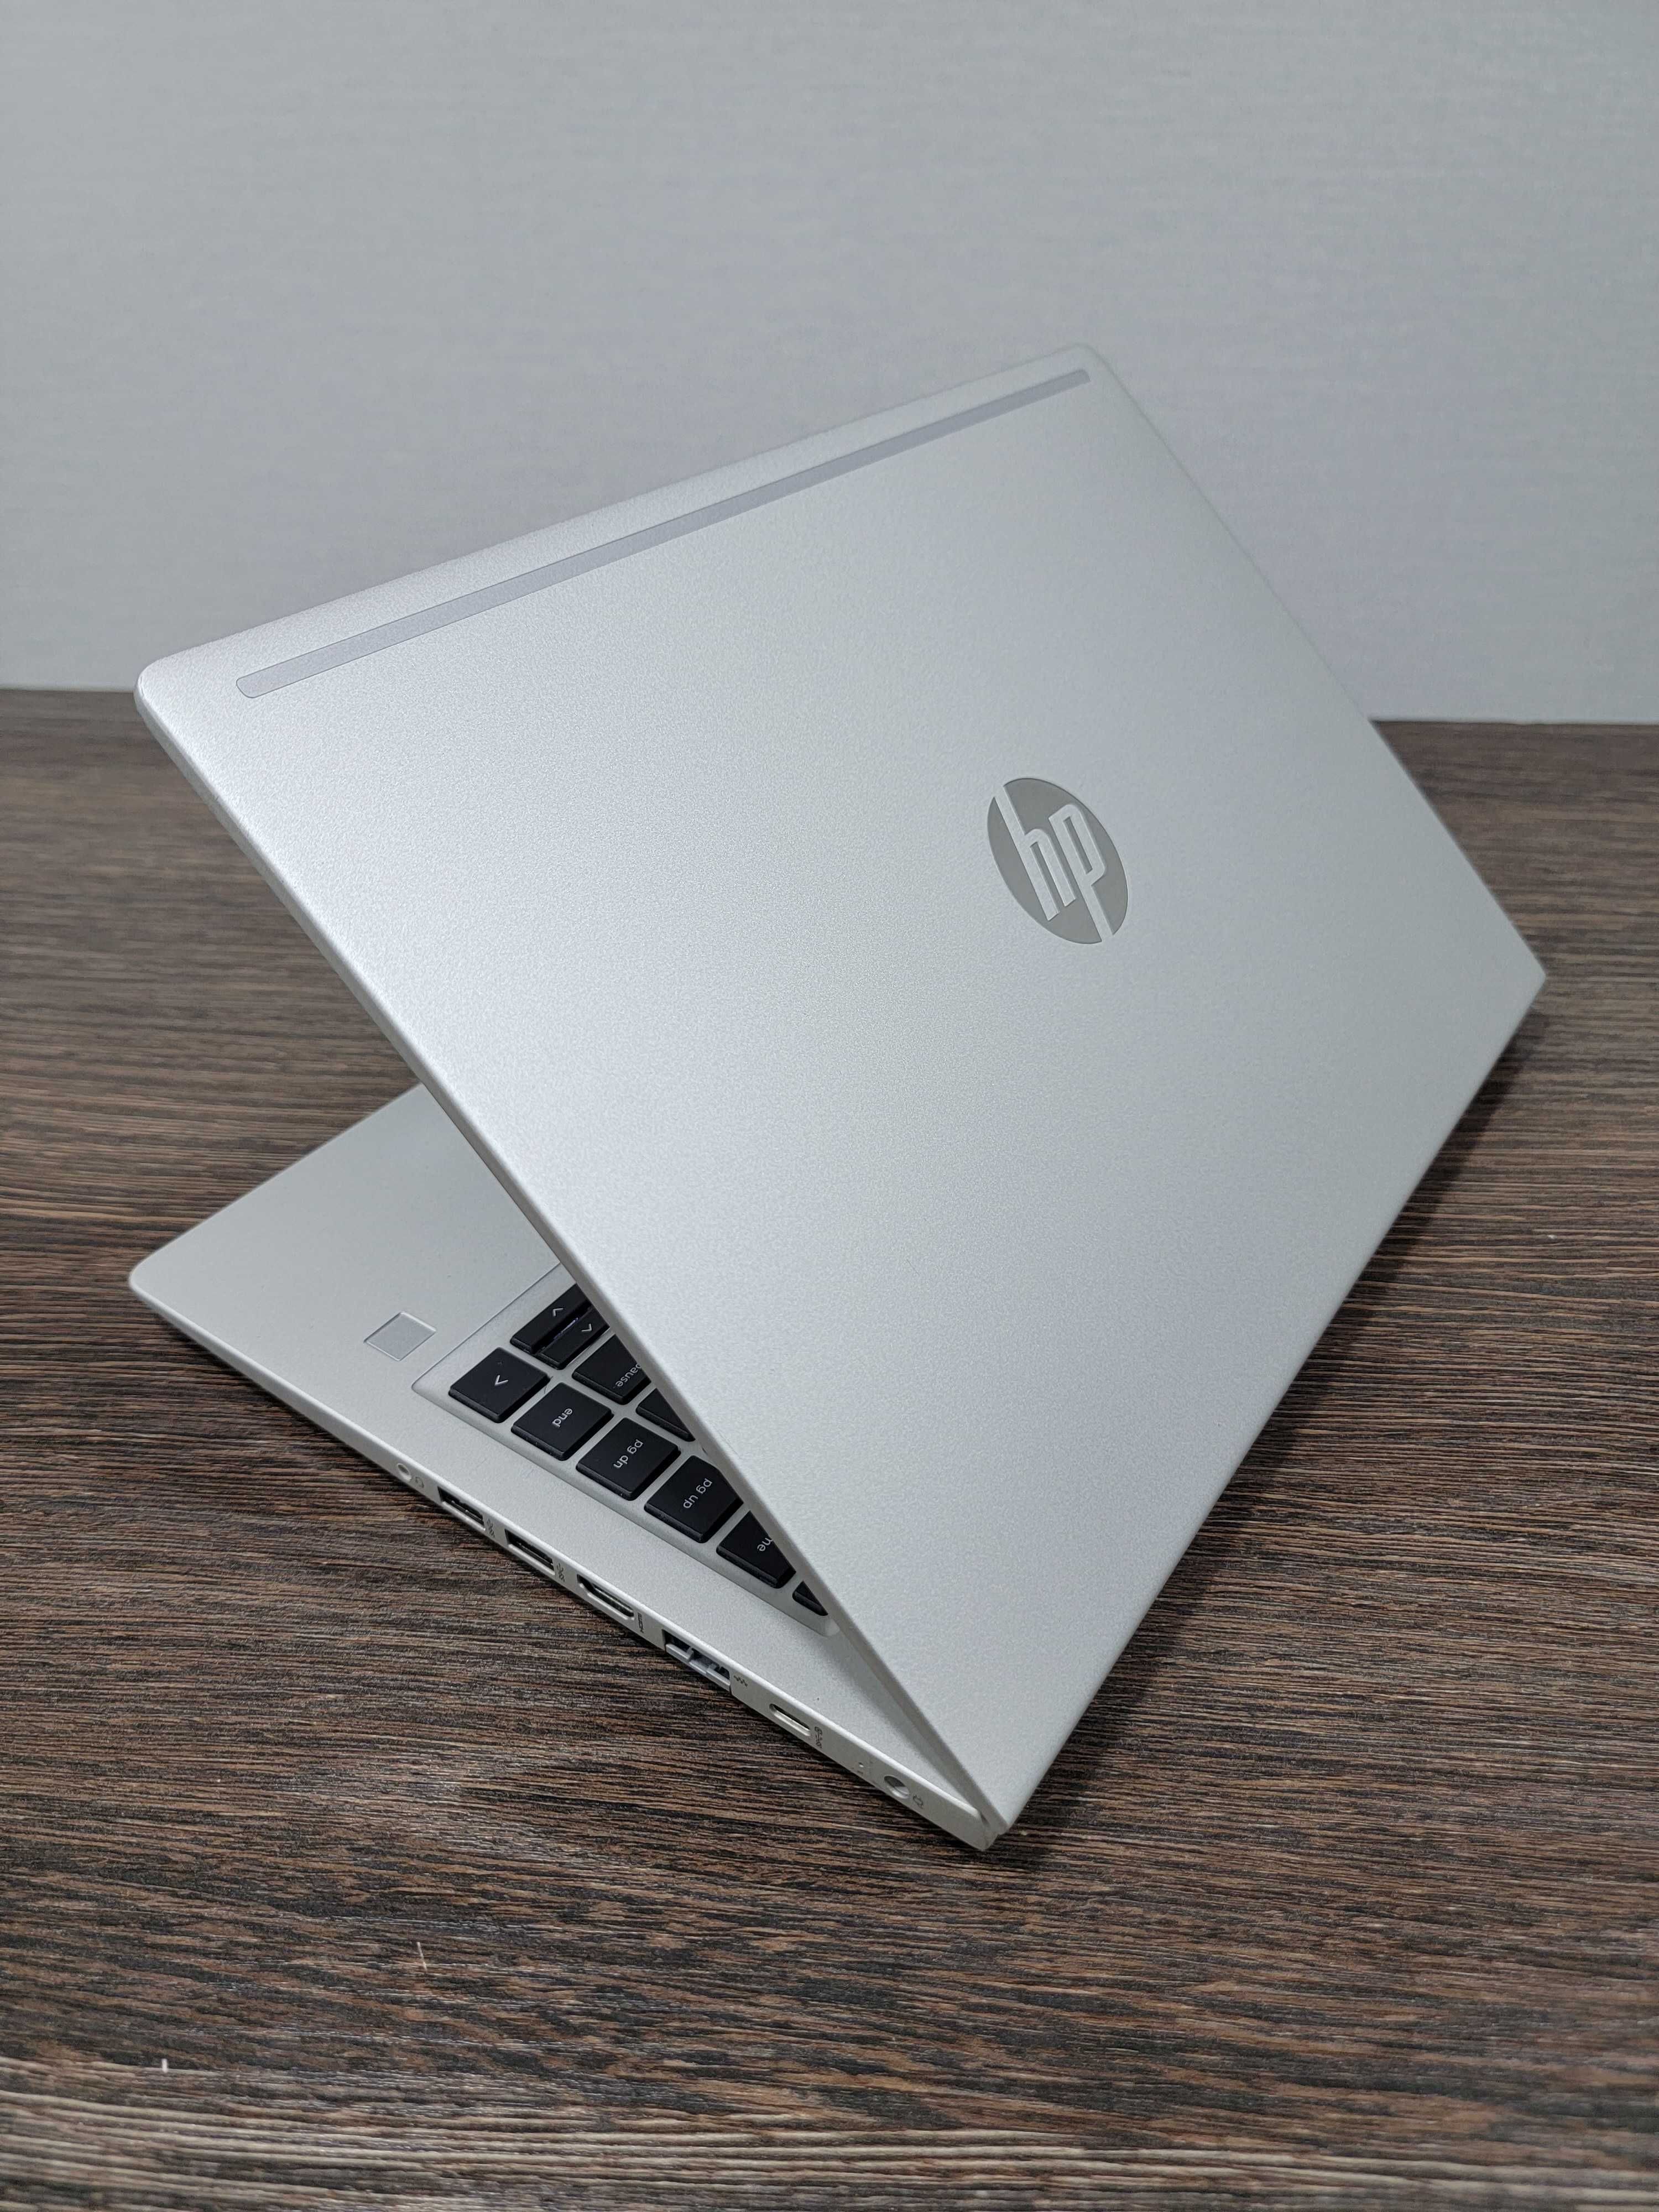 мощный Ryzen 5 ультрабук HP ProBook 445 G7, для графических и офисных